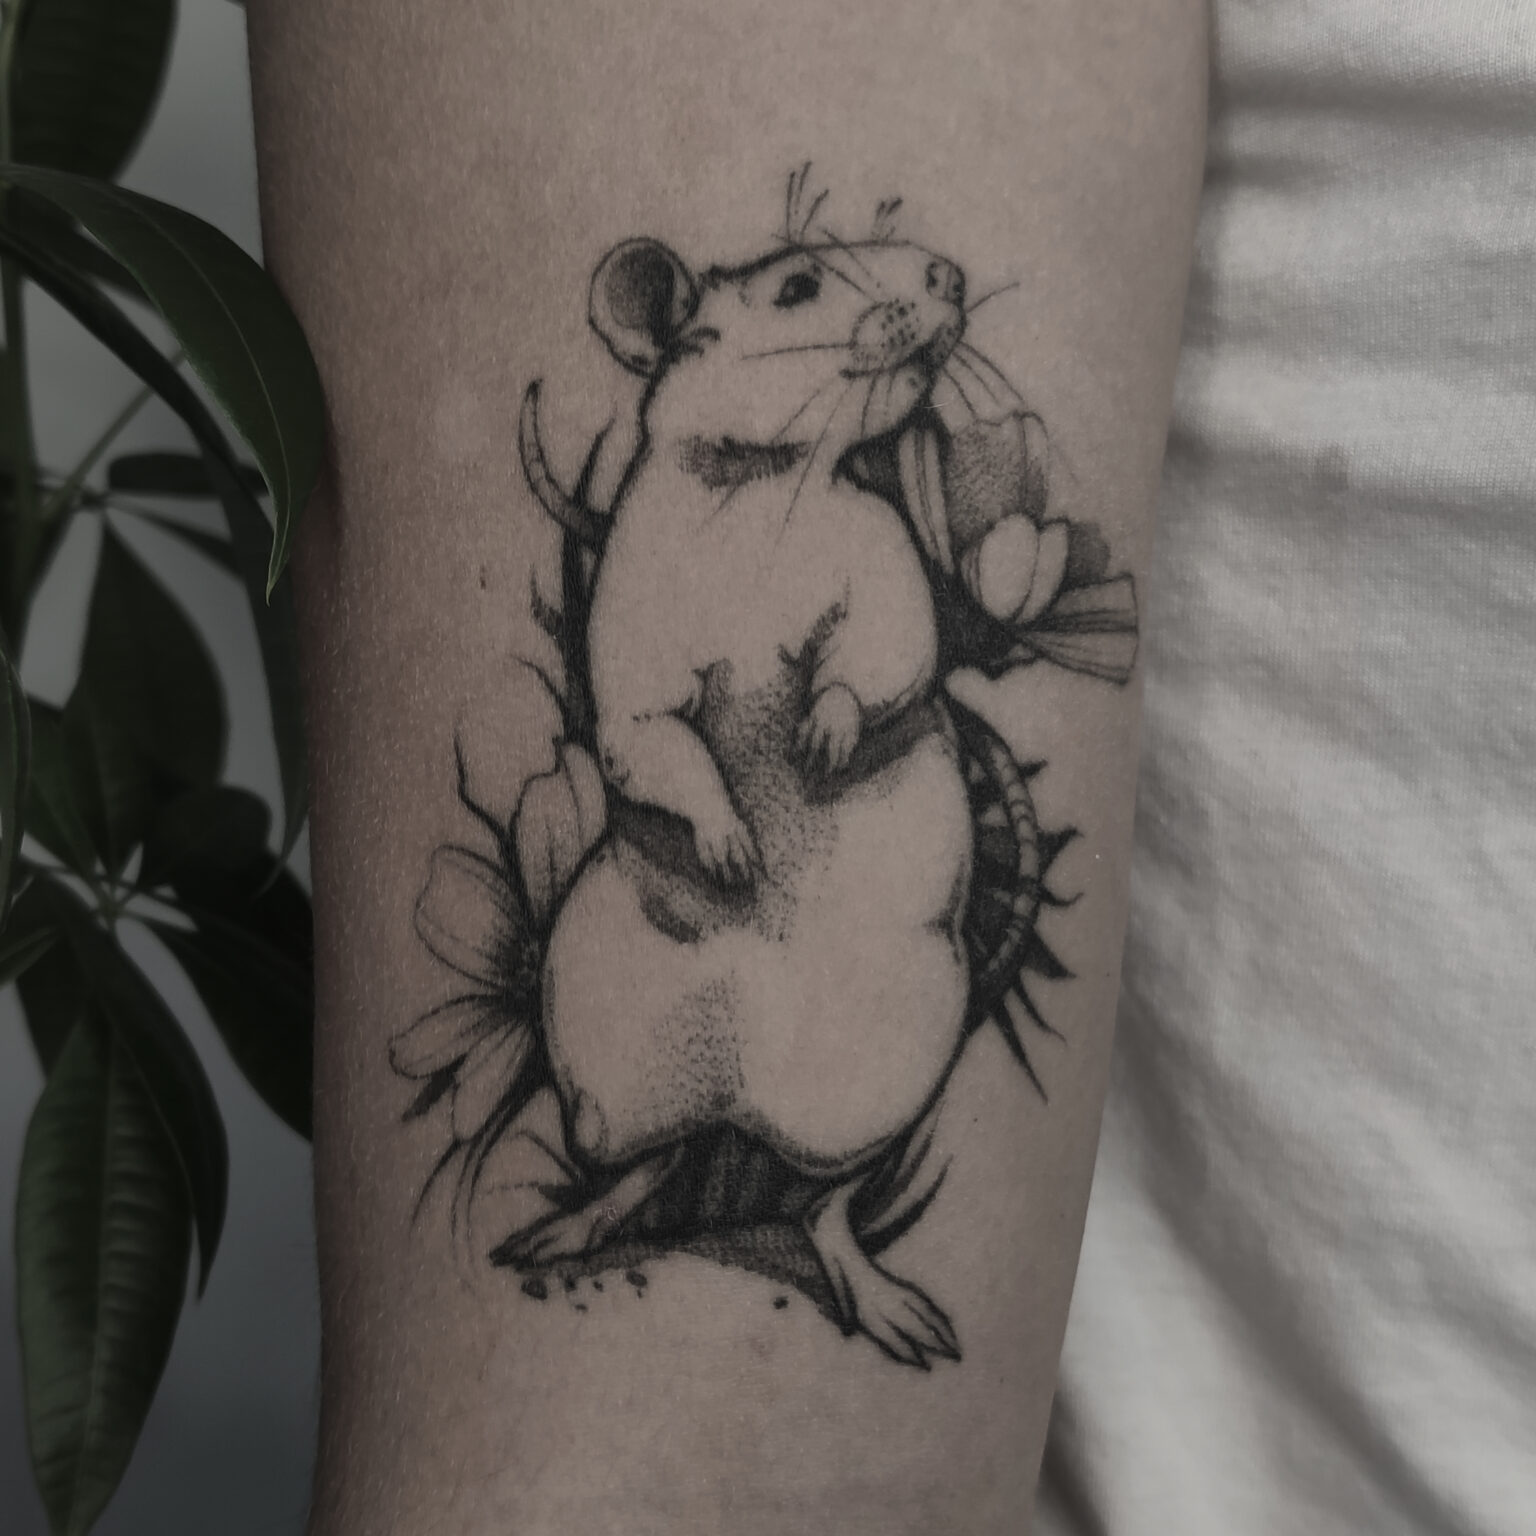 White Rat Tattoo studio tatuażu Warszawa Foxey tatuaż stojący szczur